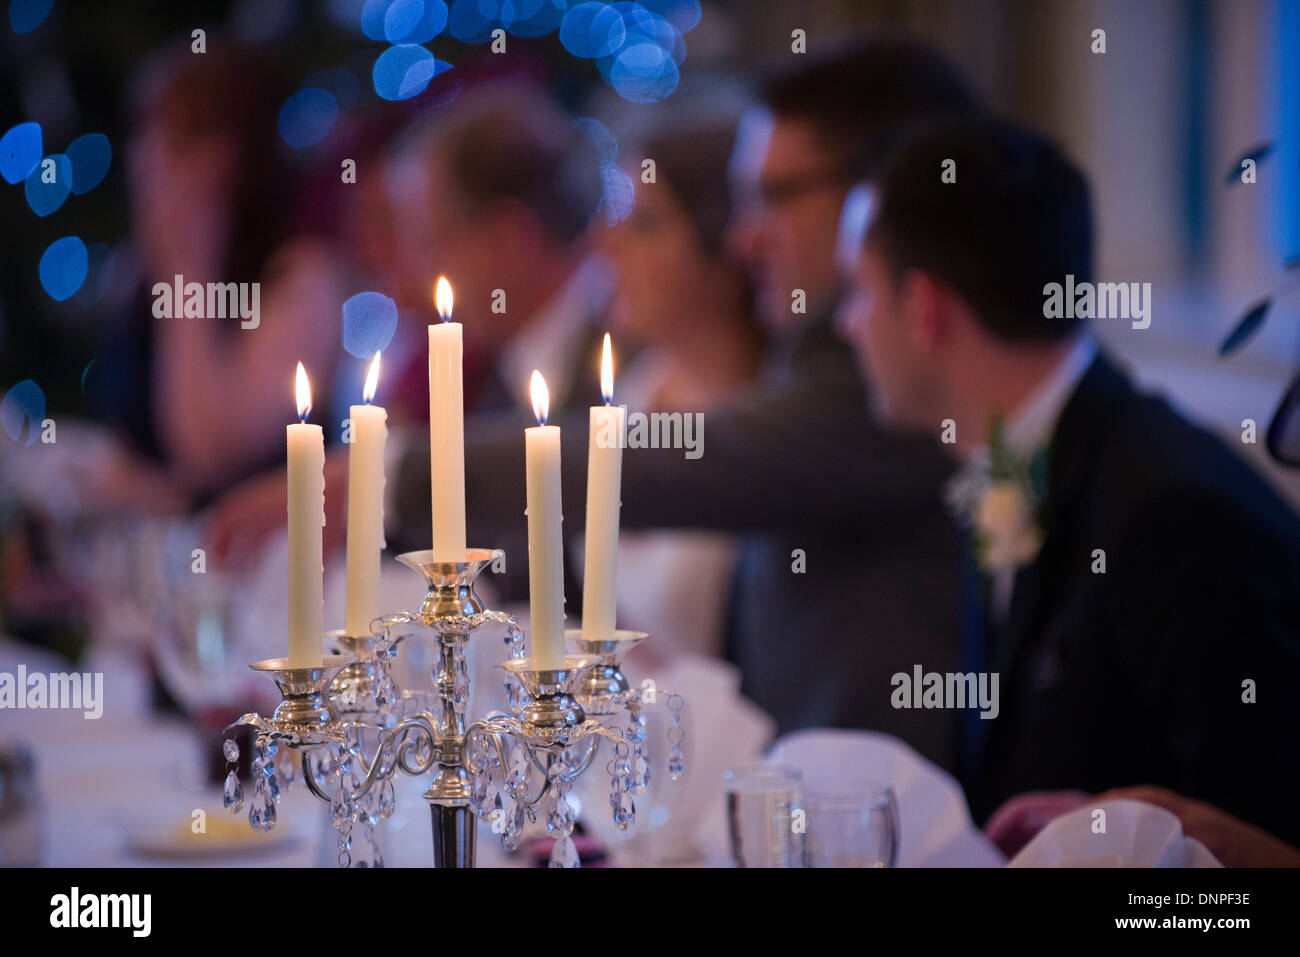 Leuchter bei einer Hochzeitsfeier, Funktion, Anlass, etwas zu tun, Menschen, glücklich, Feier, Flamme, Gefahr, Gefahr Stockfoto